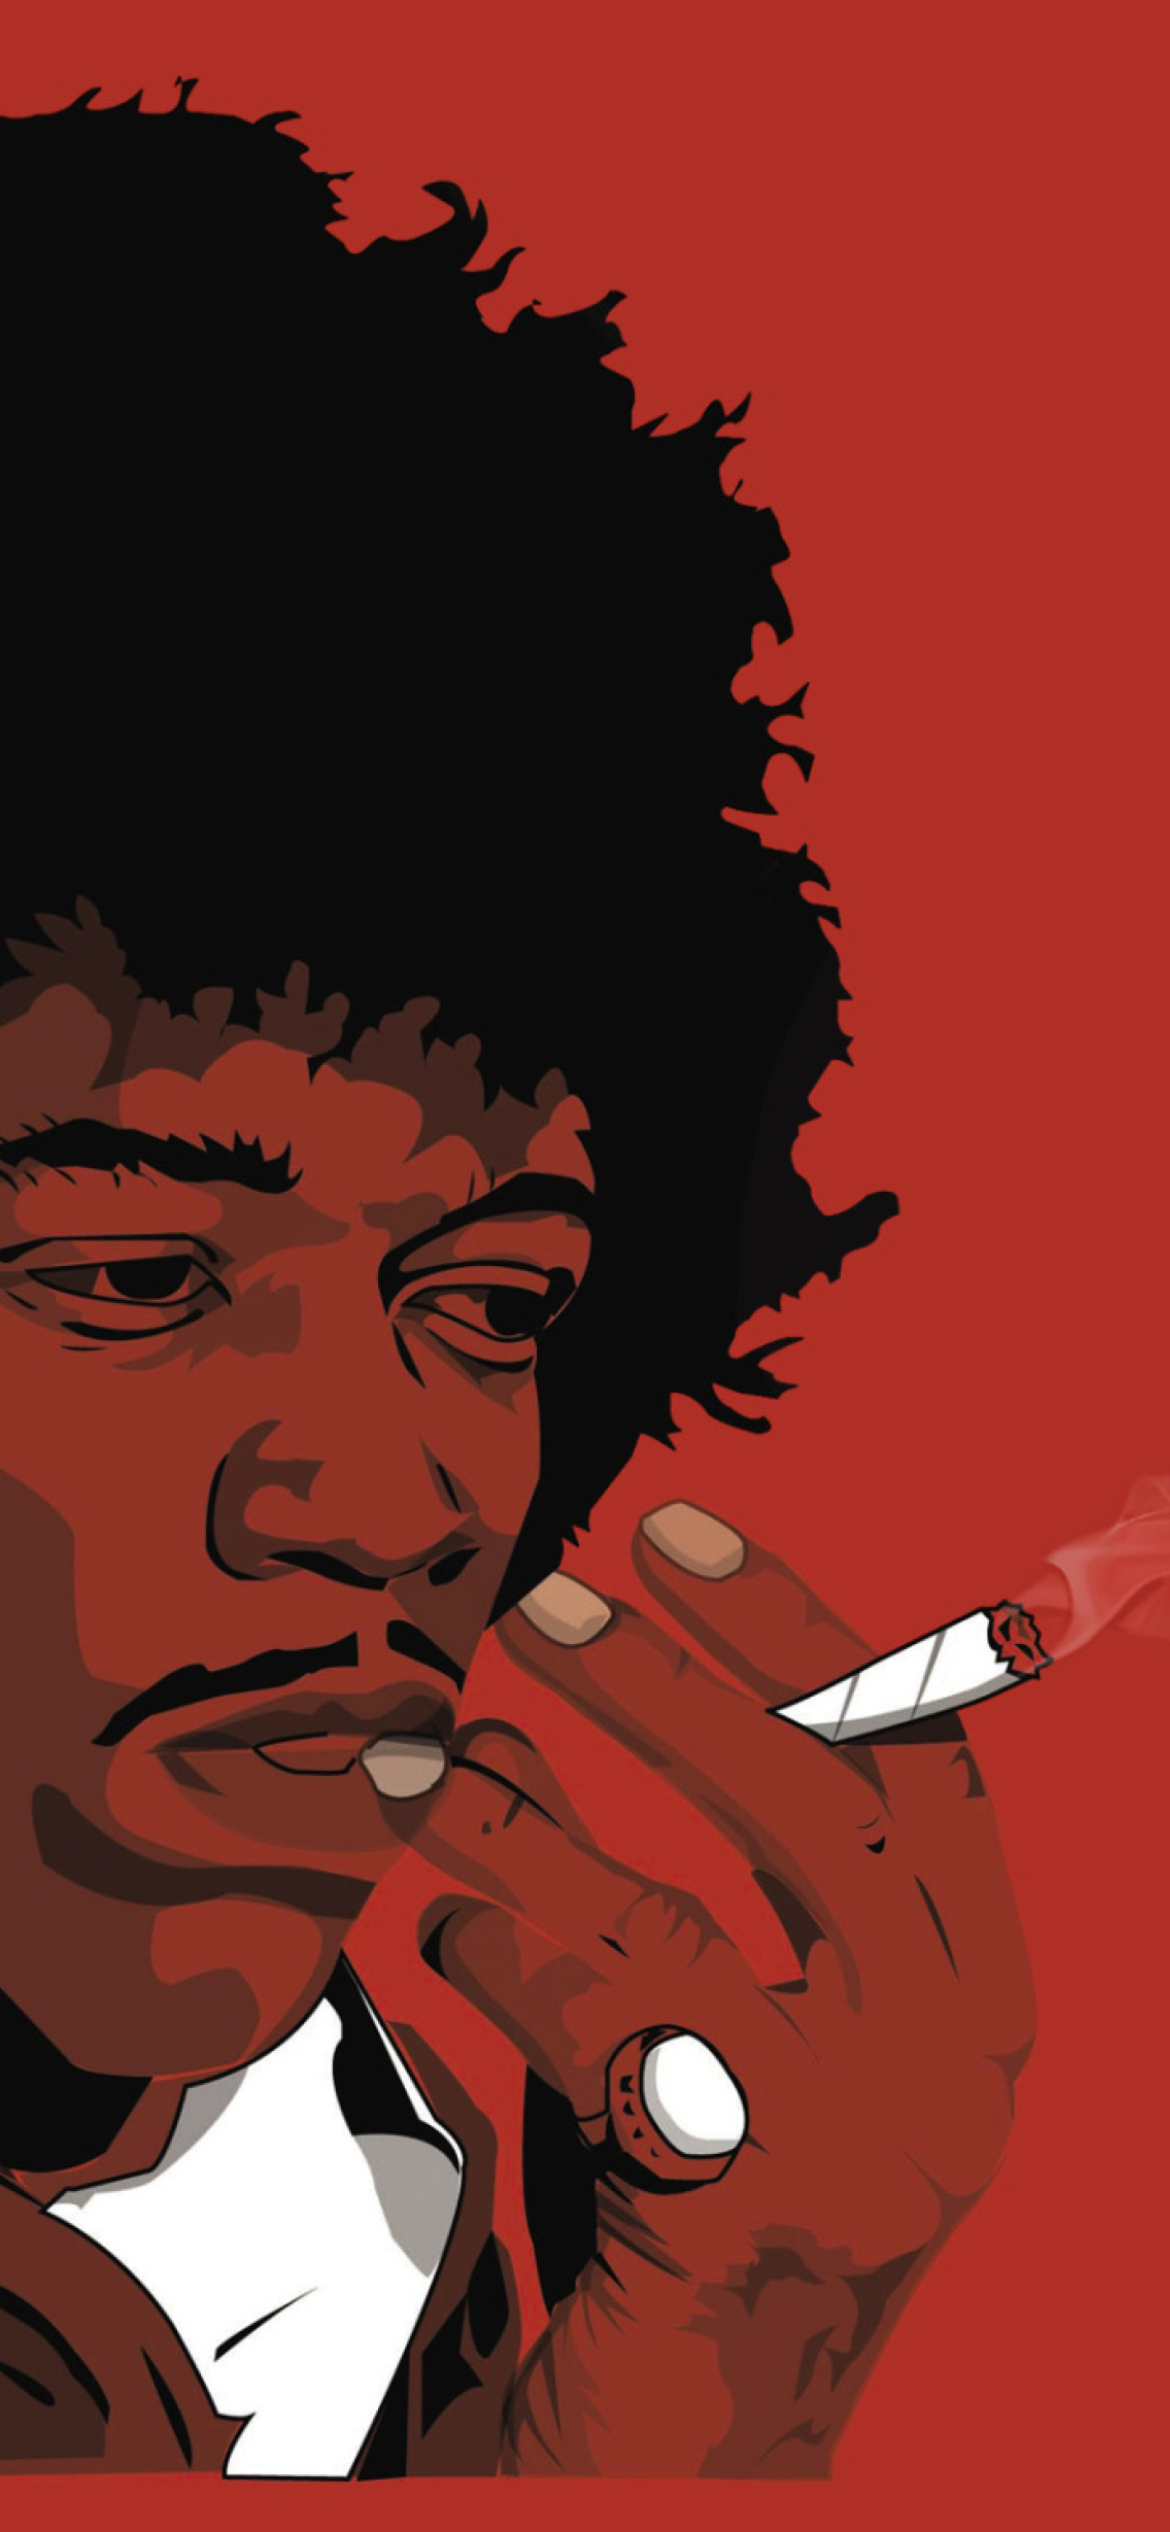 Jimi Hendrix wallpaper 1170x2532